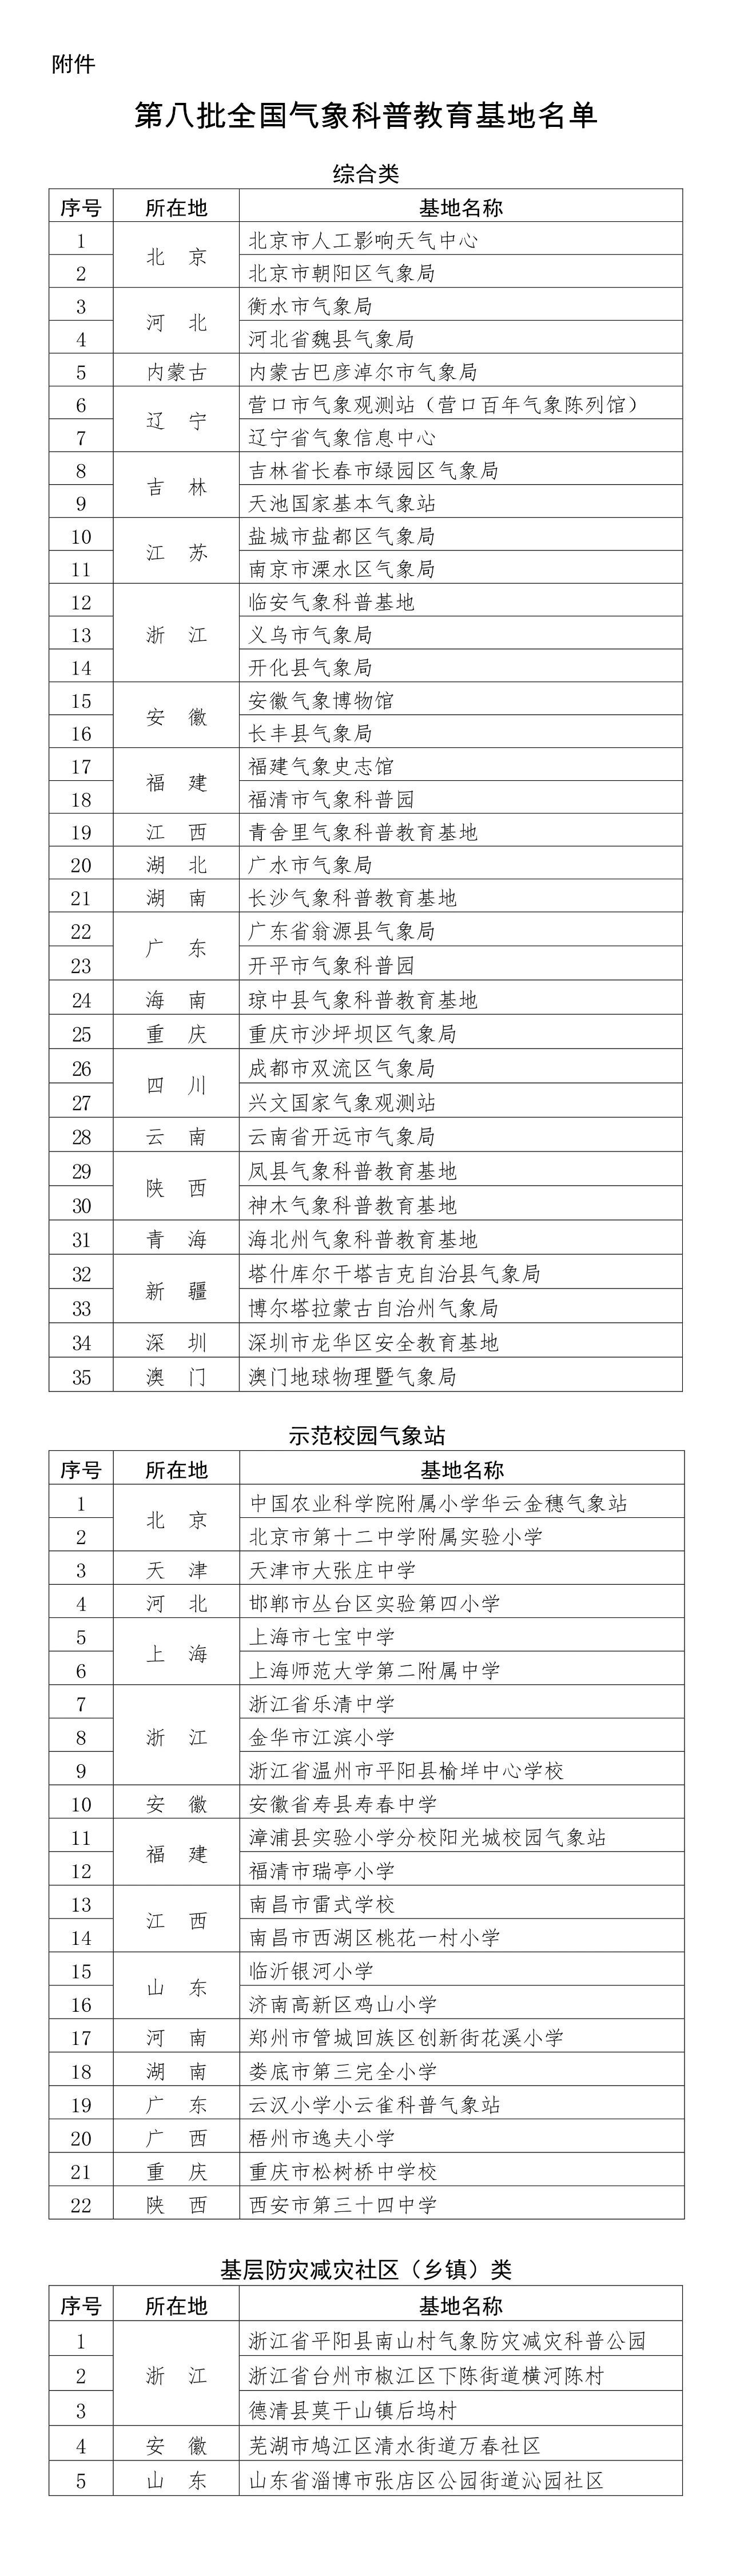 2022年北京市学生戏曲进校园系列活动——“国粹第一课”海程时间管理训练营